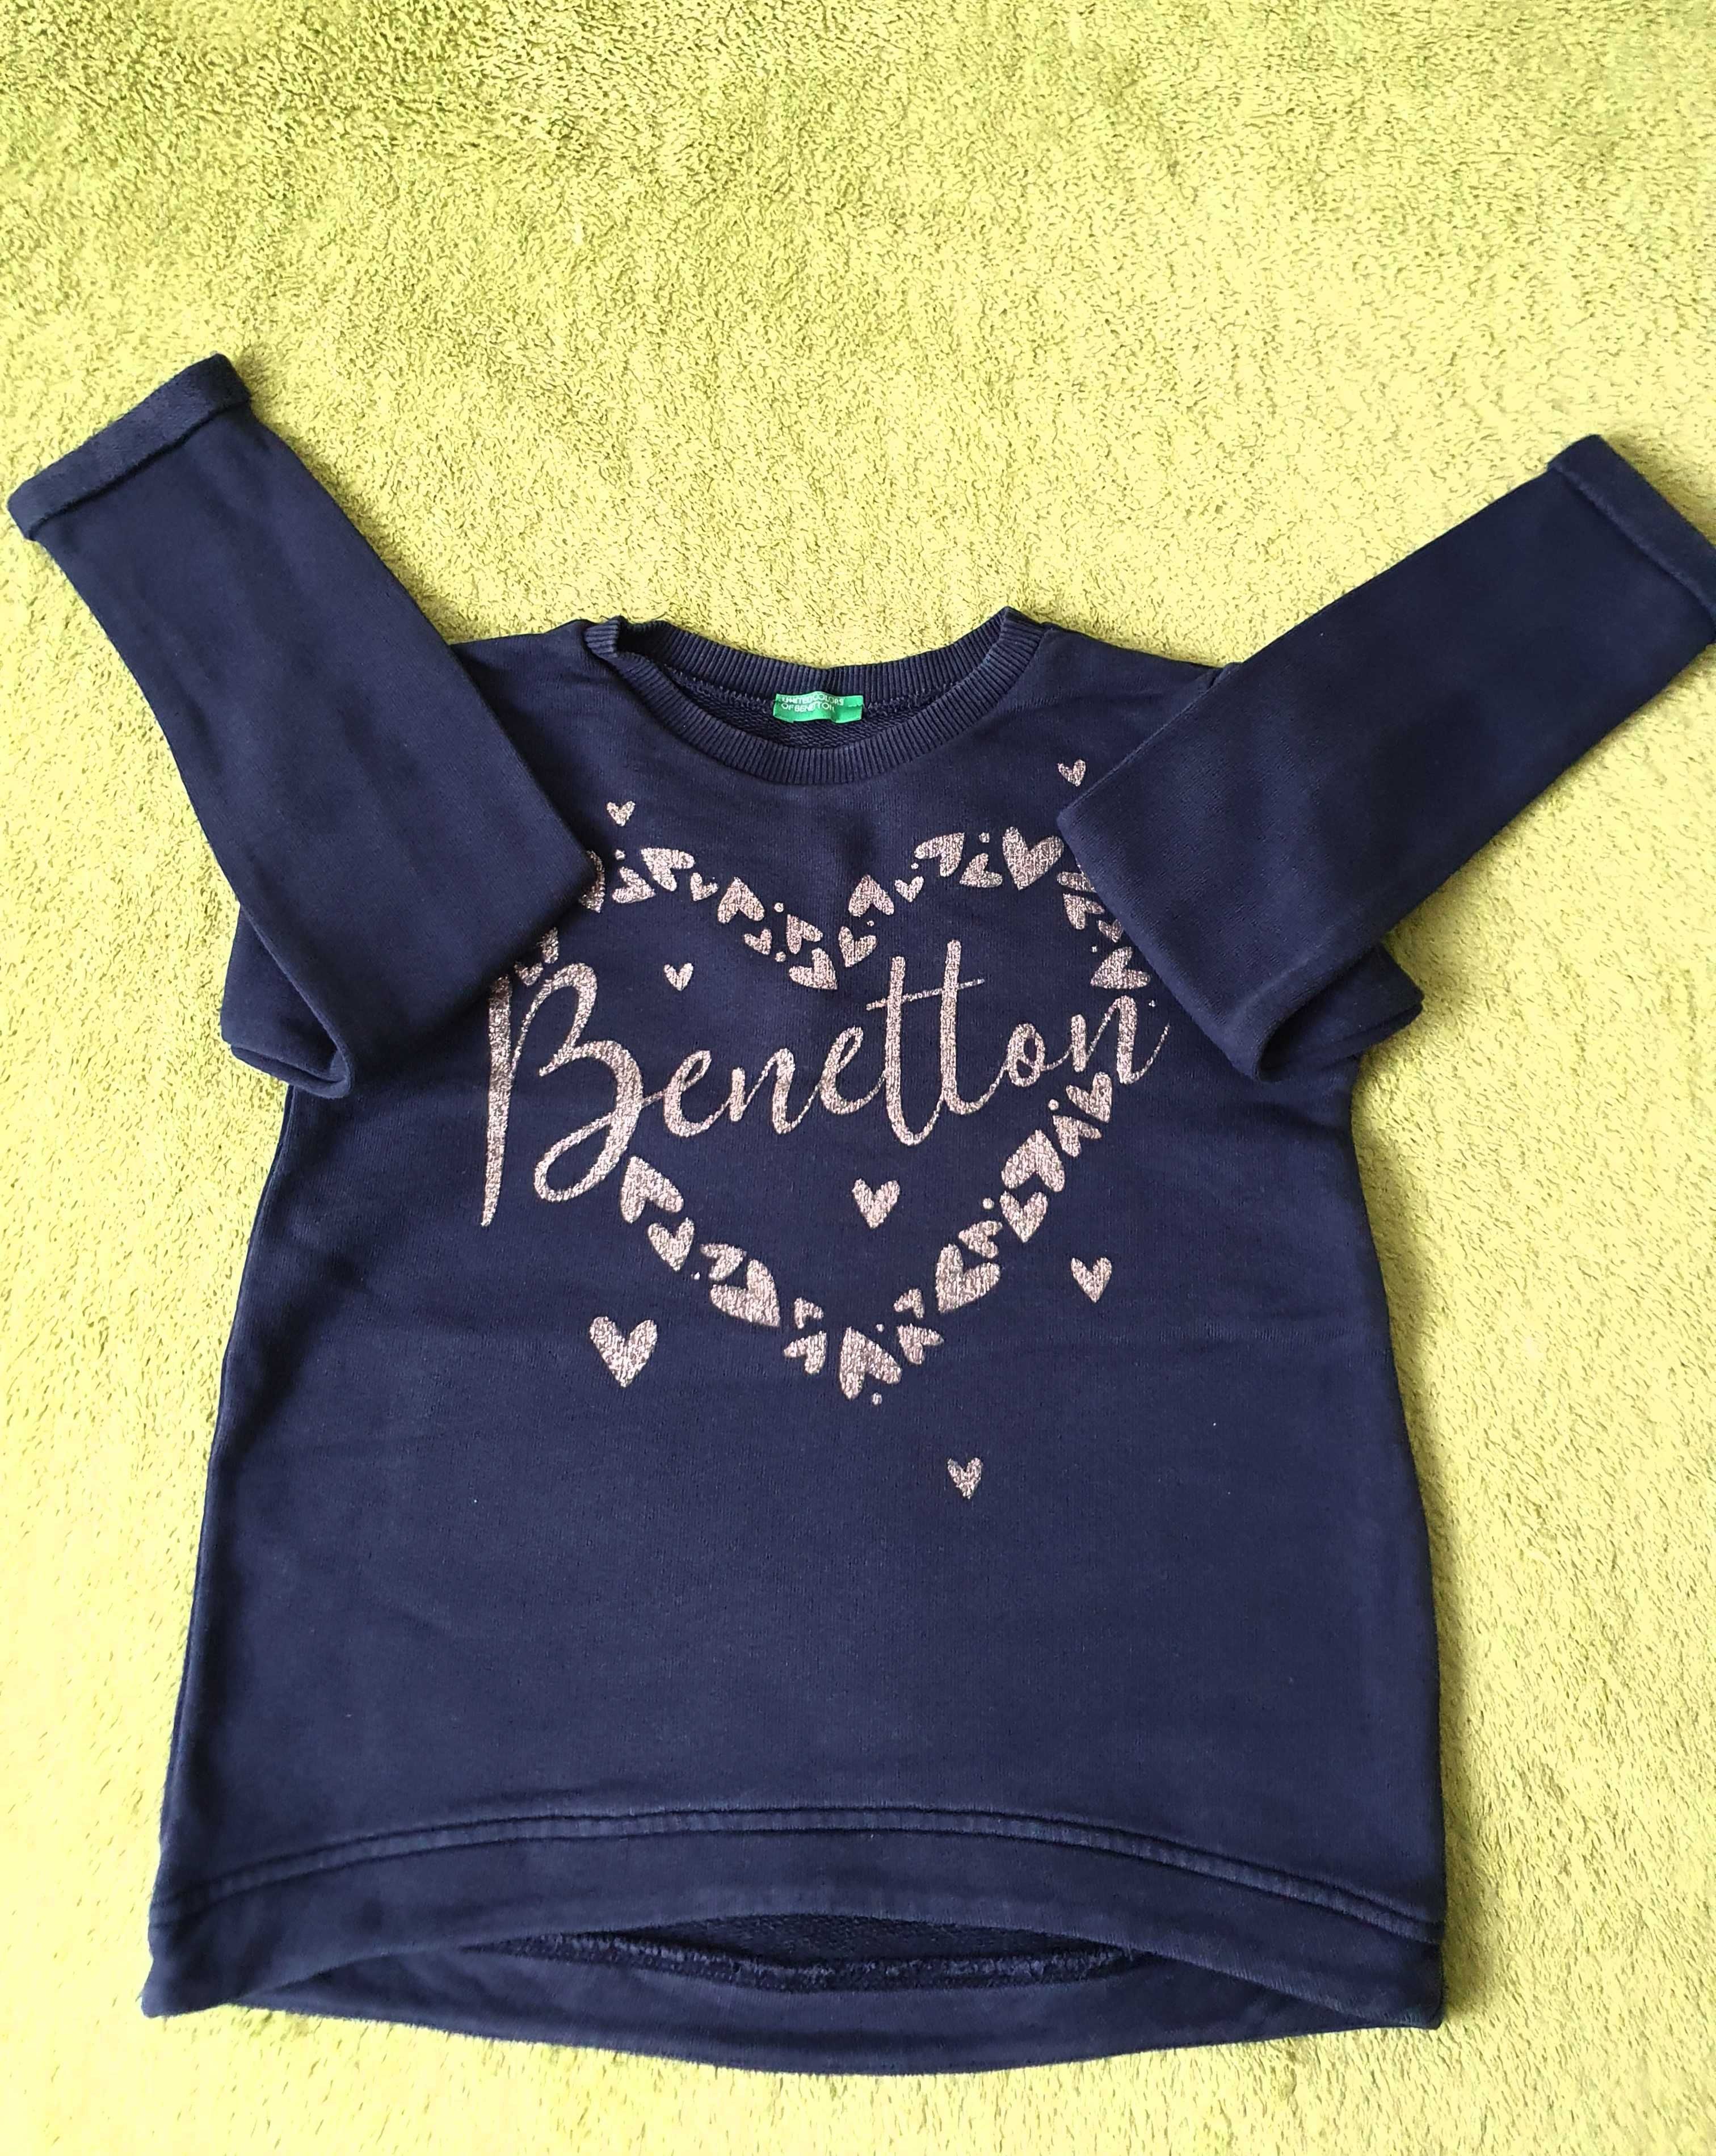 Bluze fetite Benetton, 6-7 ani